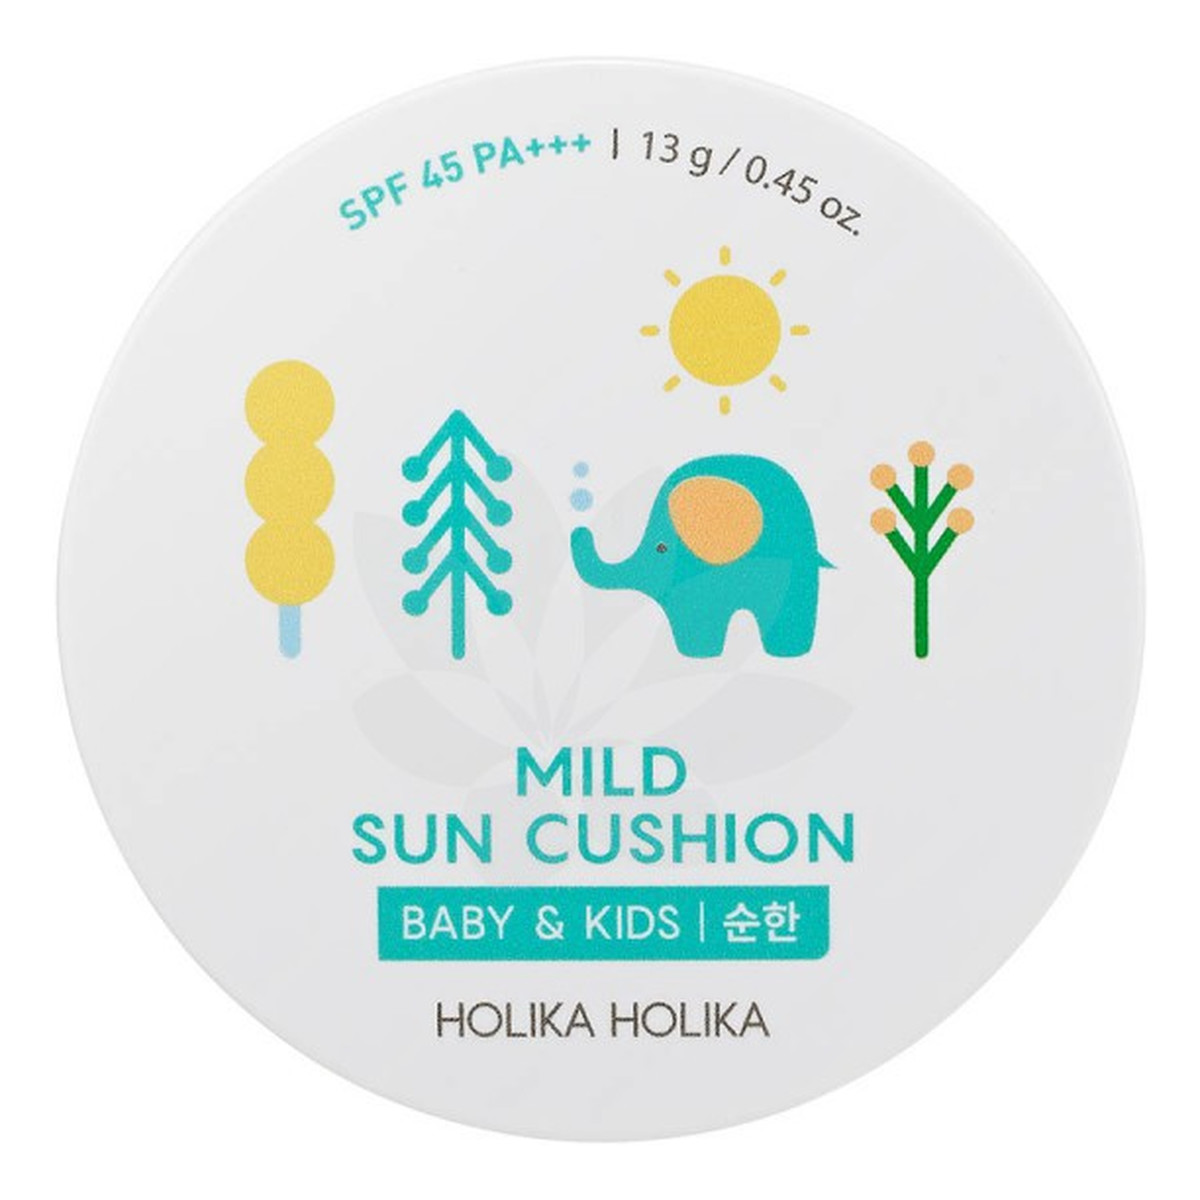 Holika Holika Mild Sun Cushion Baby & Kids SPF45 kompaktowy krem przeciwsłoneczny w poduszeczce 15g